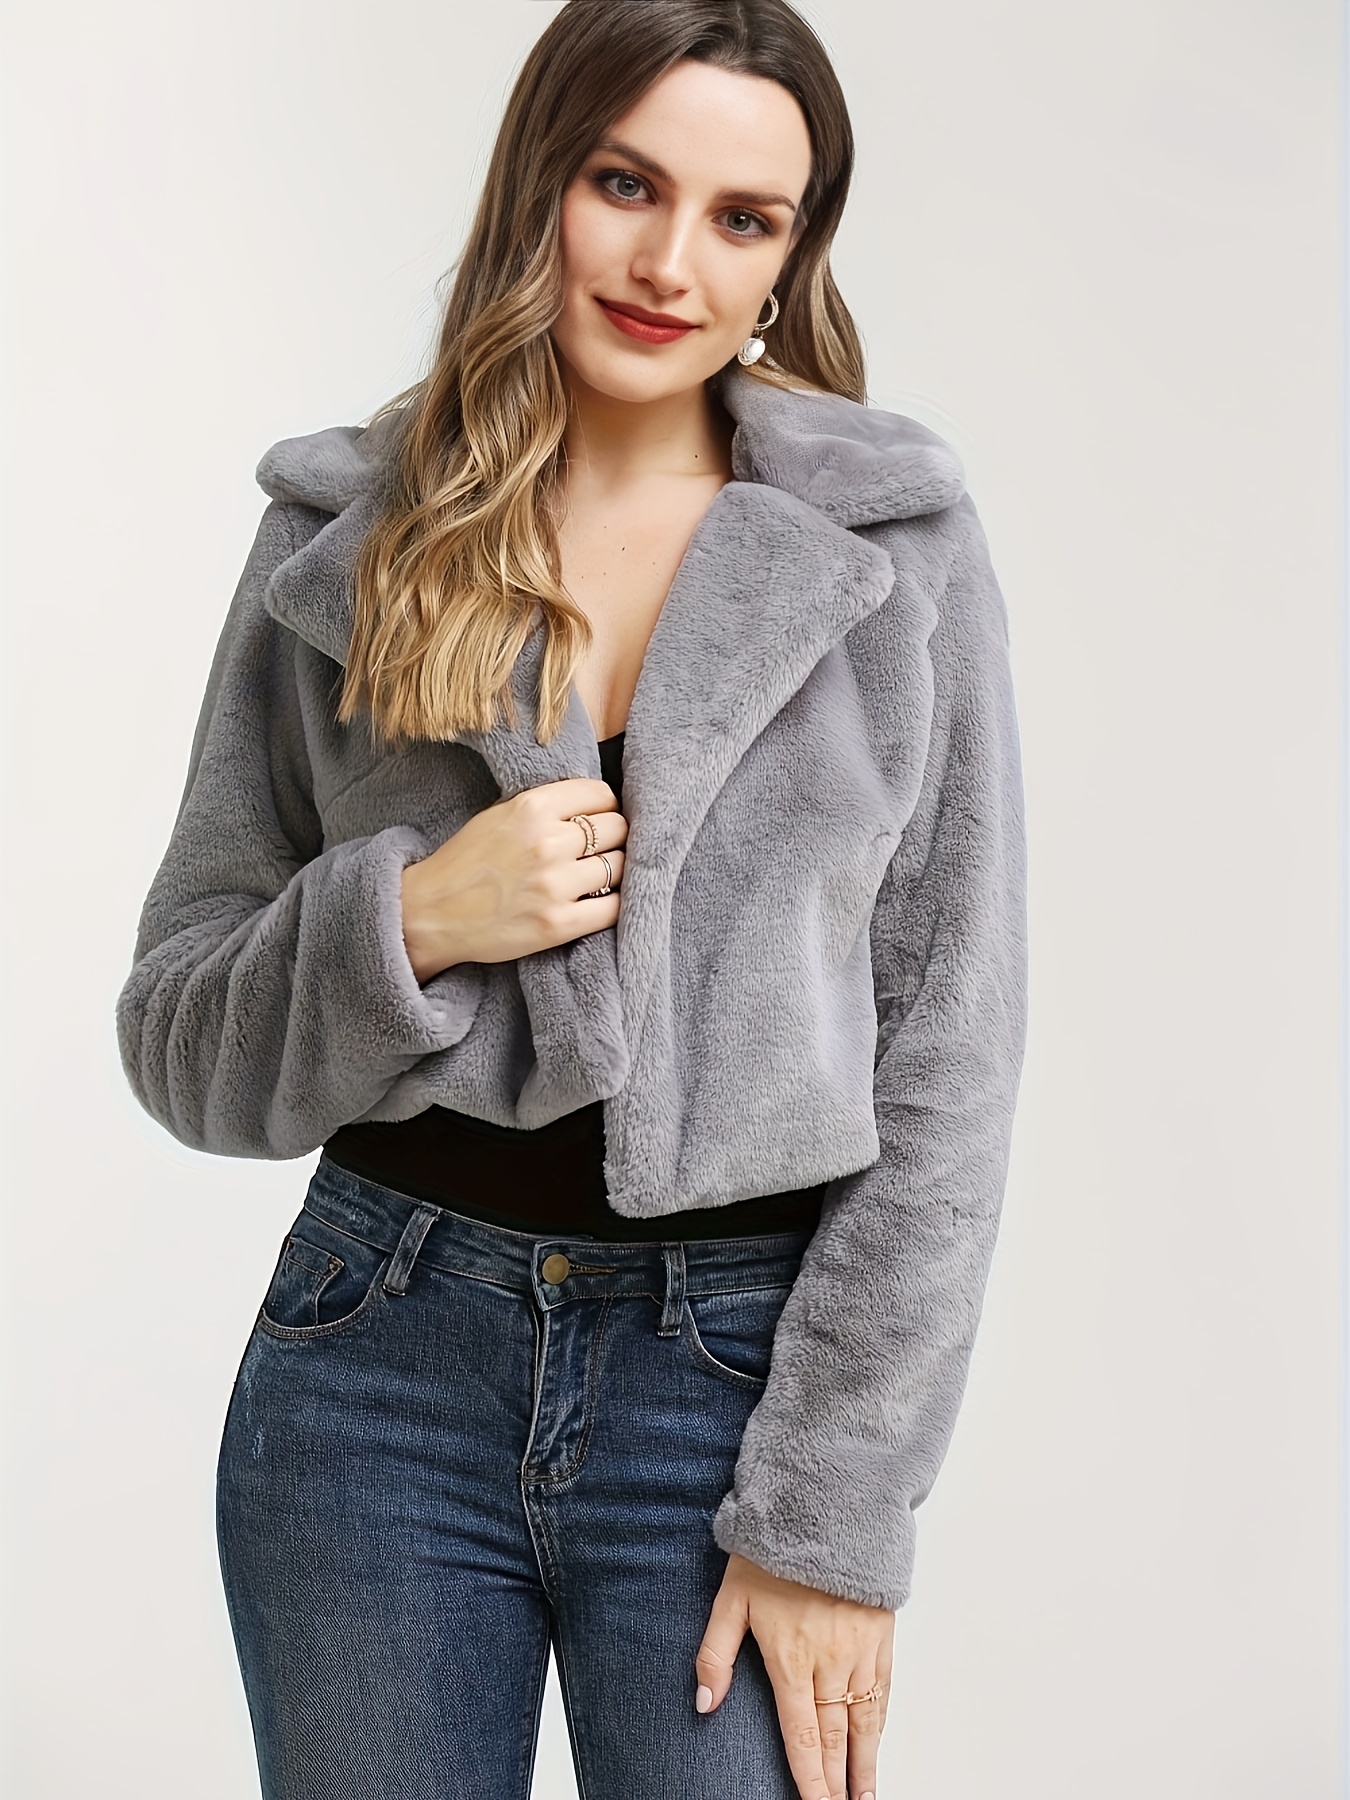 Fuzzy Fleece Jackets Women Coats Winter Open Front Cardigan Warm Sherpa  Jacket Faux Fur Long Coat Plus Size Outwear 